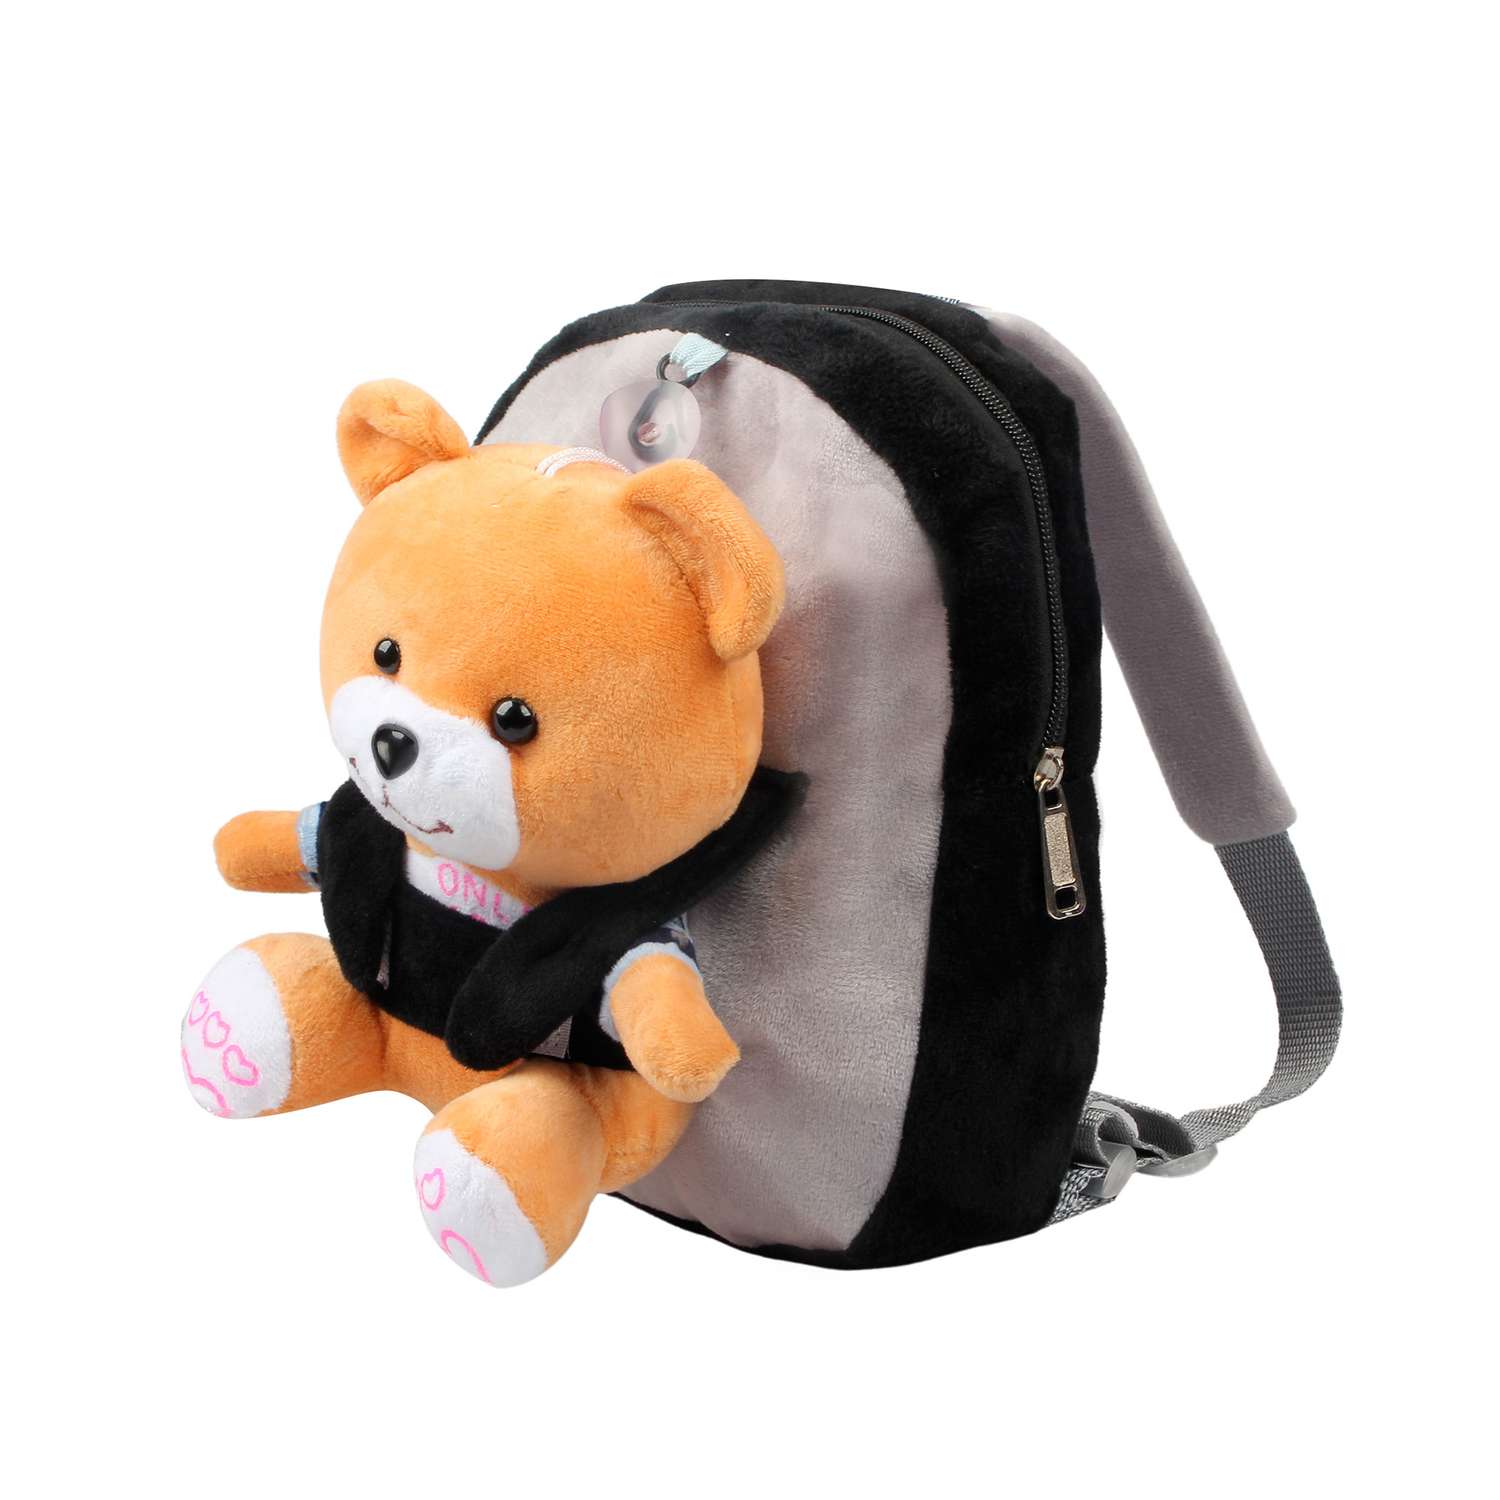 Рюкзак с игрушкой Little Mania серо-черный Мишка светло-коричневый - фото 2